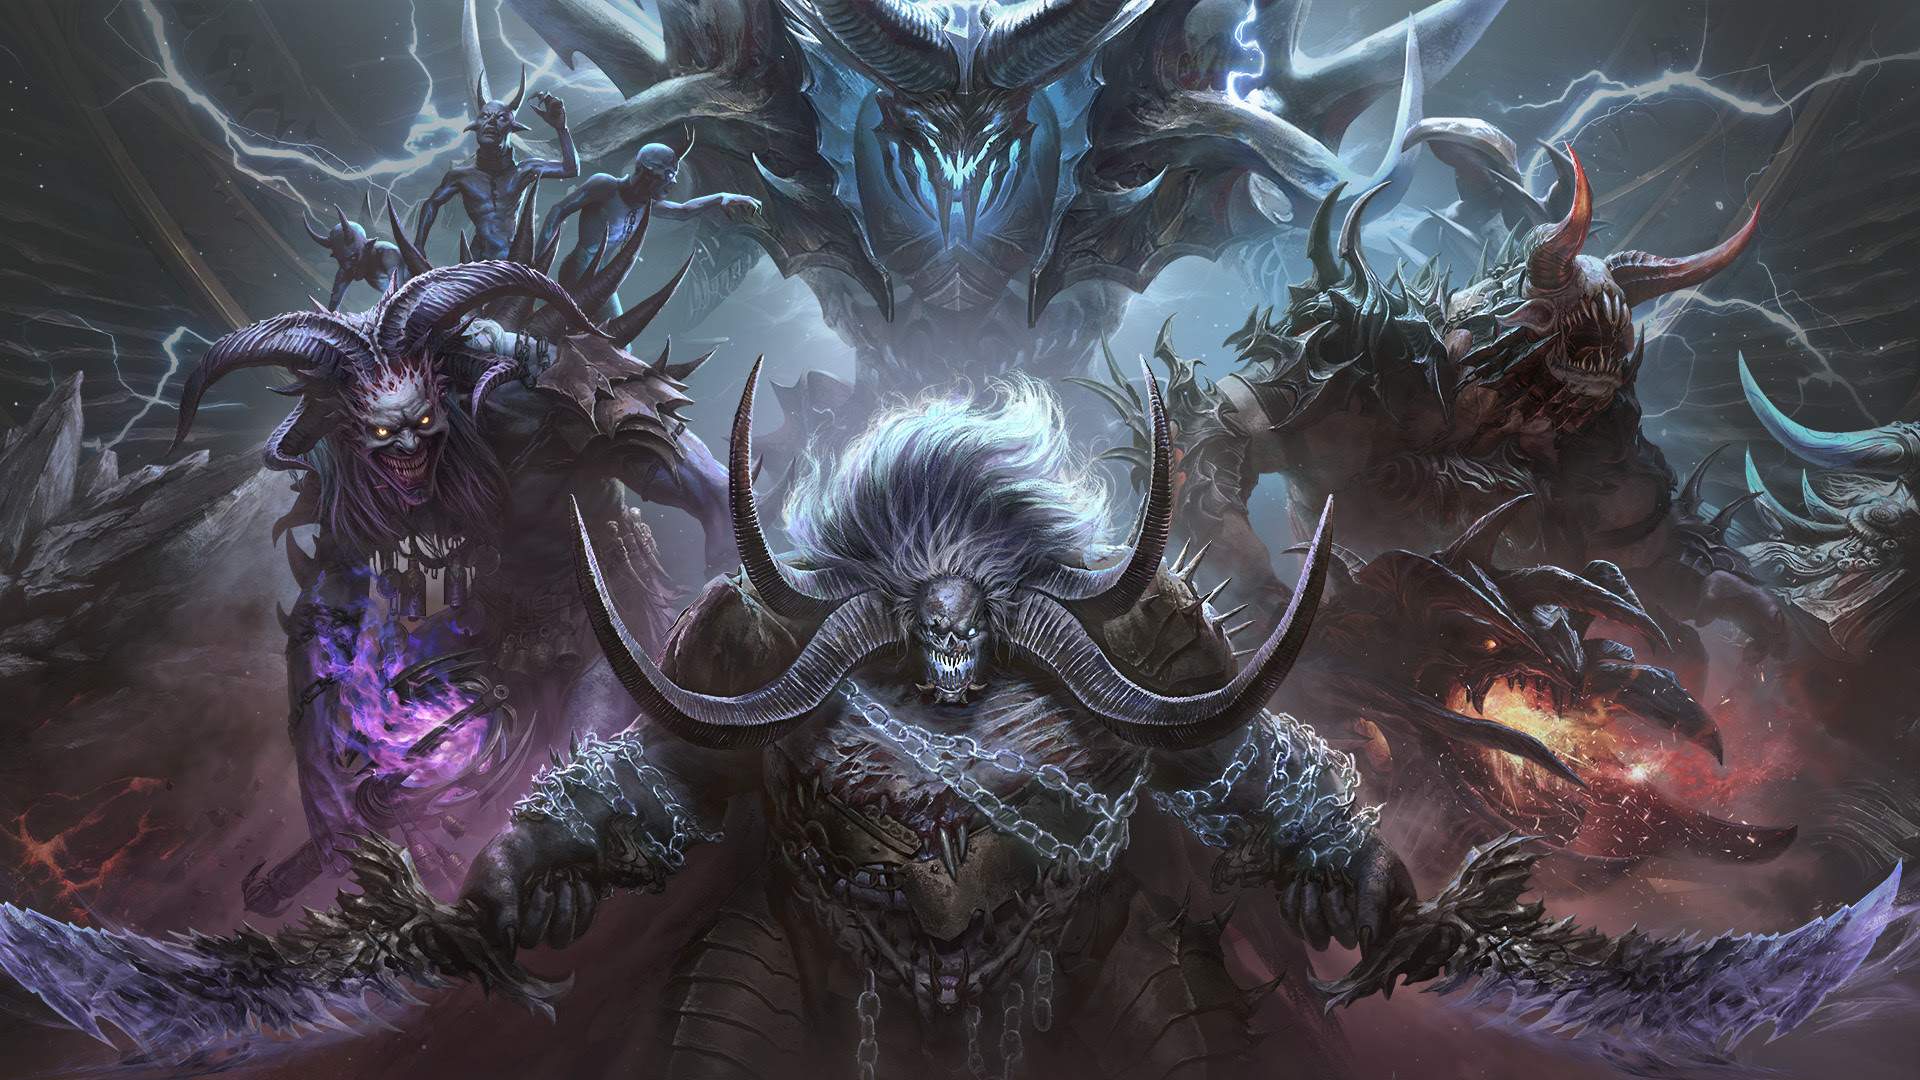 Diablo Immortal - Todas as classes e habilidades